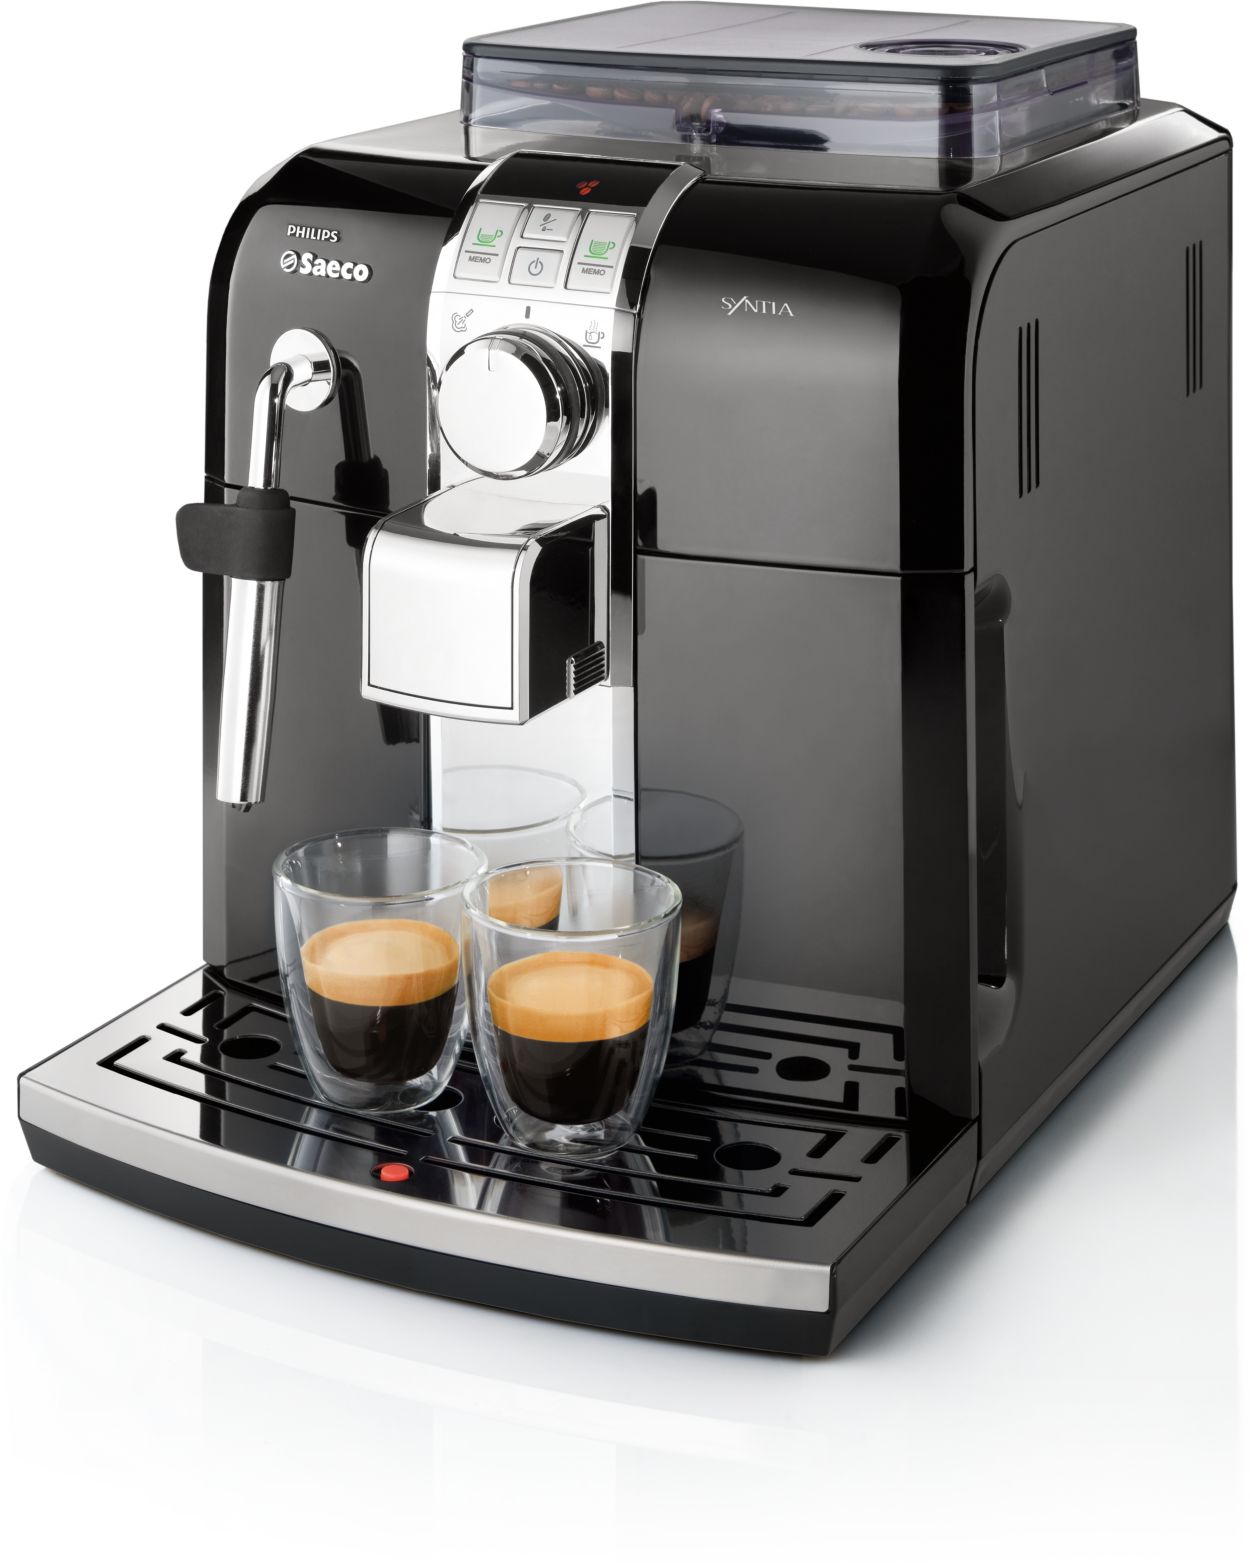 Syntia Super-automatic espresso HD8833/47